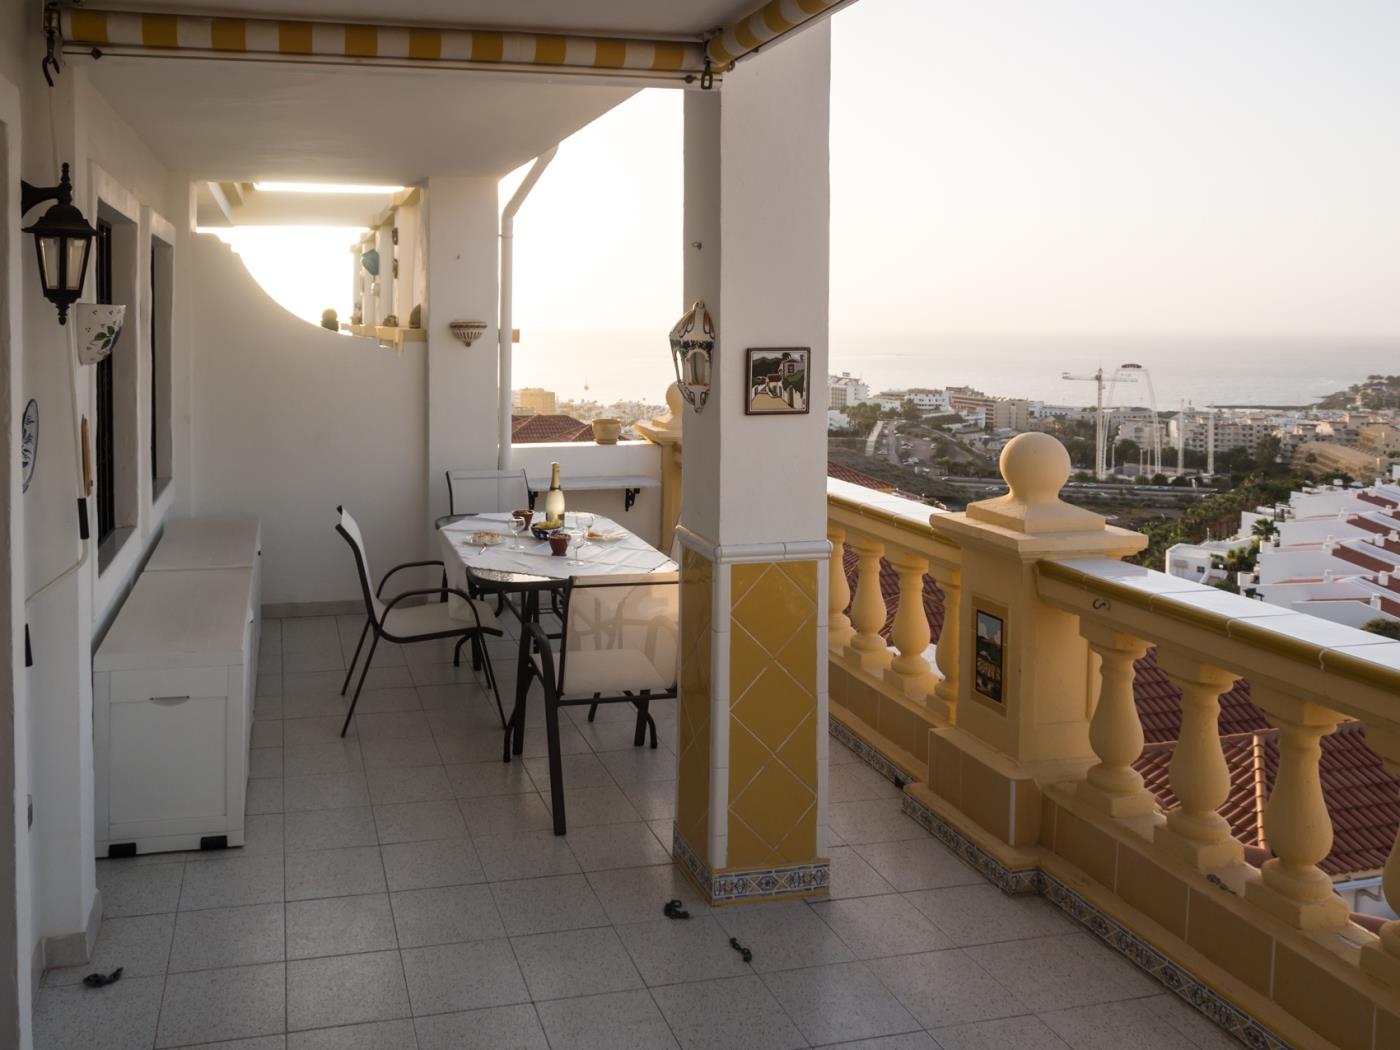 Apartamento un dormitorio, luminoso, gran terraza vista mar en San Eugenio Alto